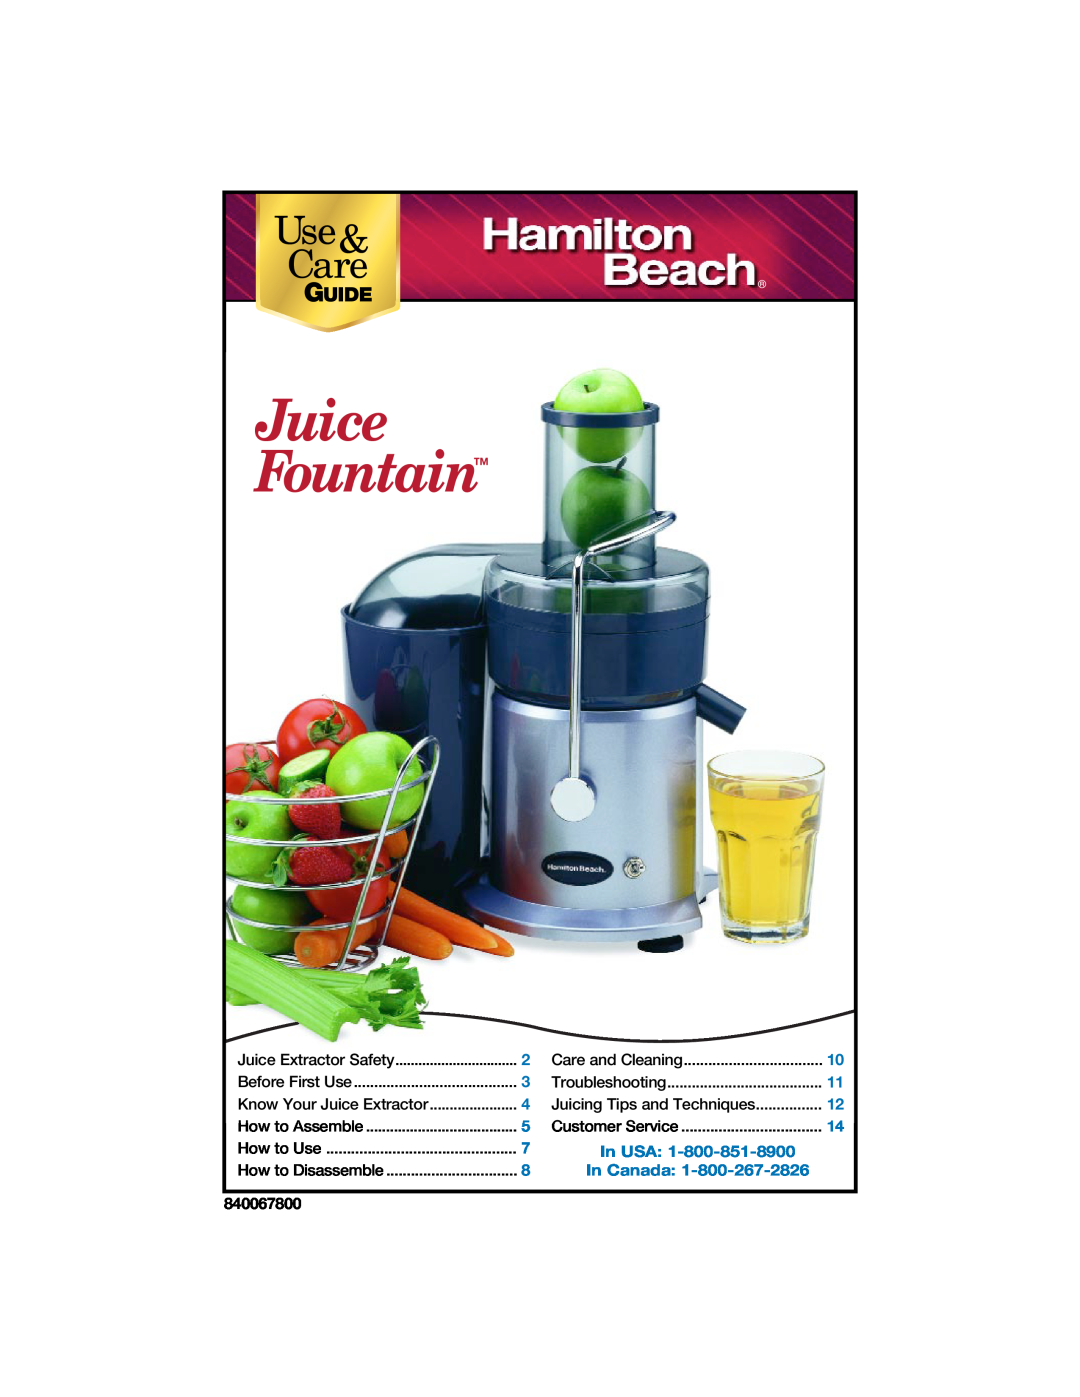 Hamilton Beach 840067800 manual Juice Fountain, Use& Care, Guide 